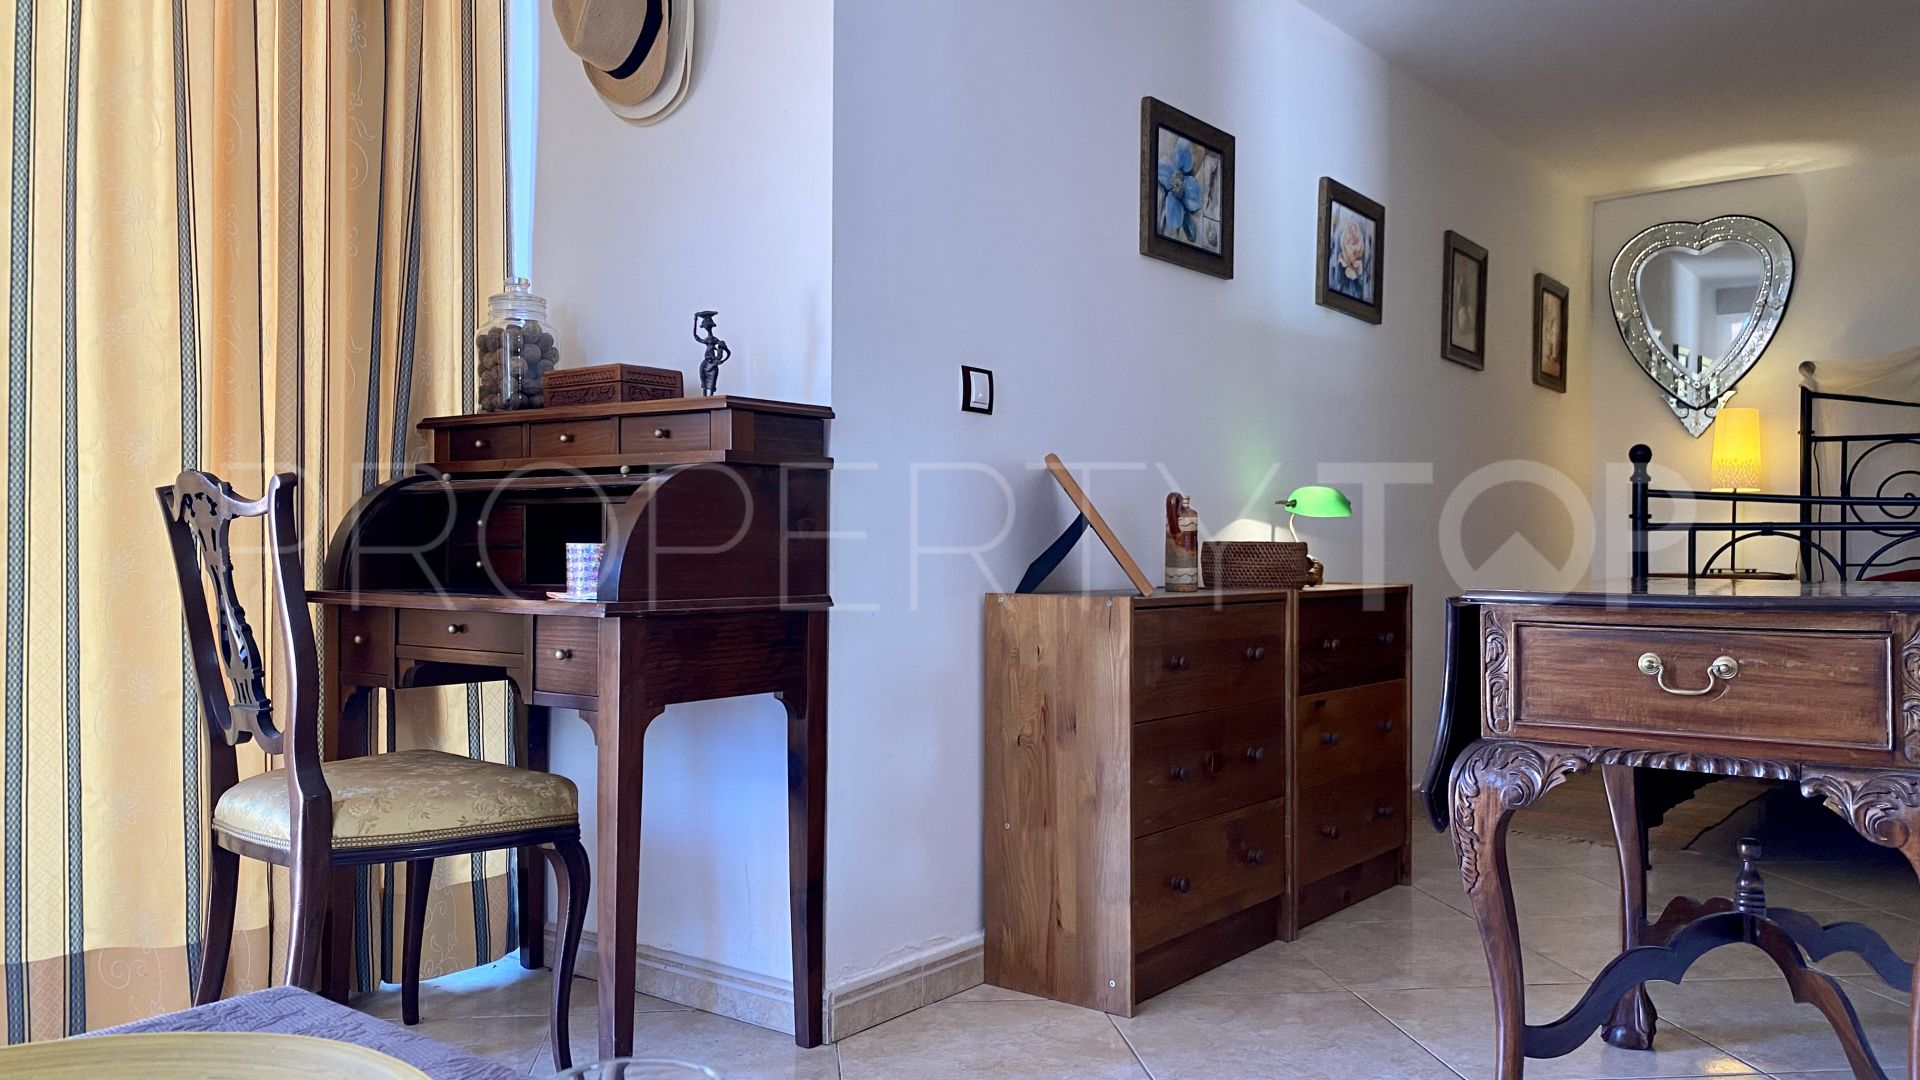 5 bedrooms Sierrezuela villa for sale